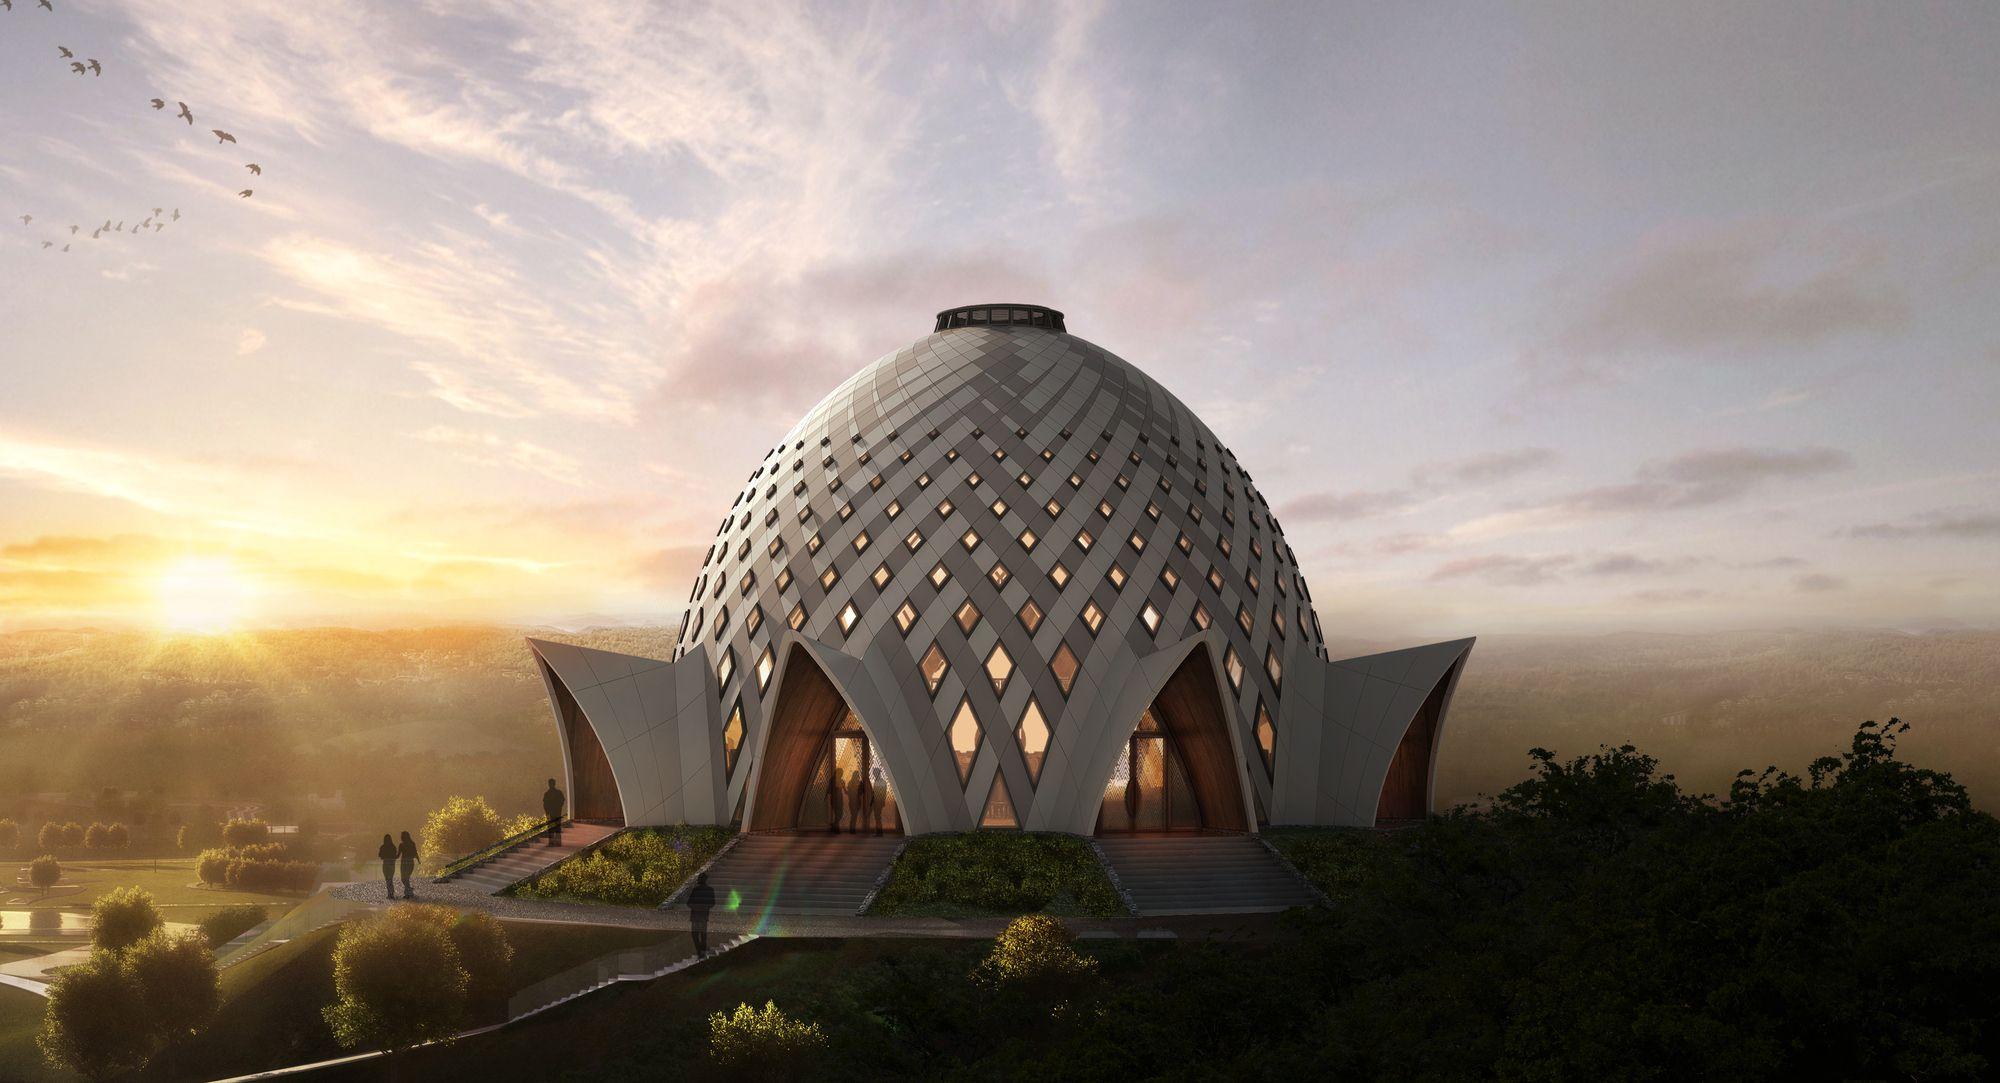 The Bahá'í International Community has unveiled a proposal for